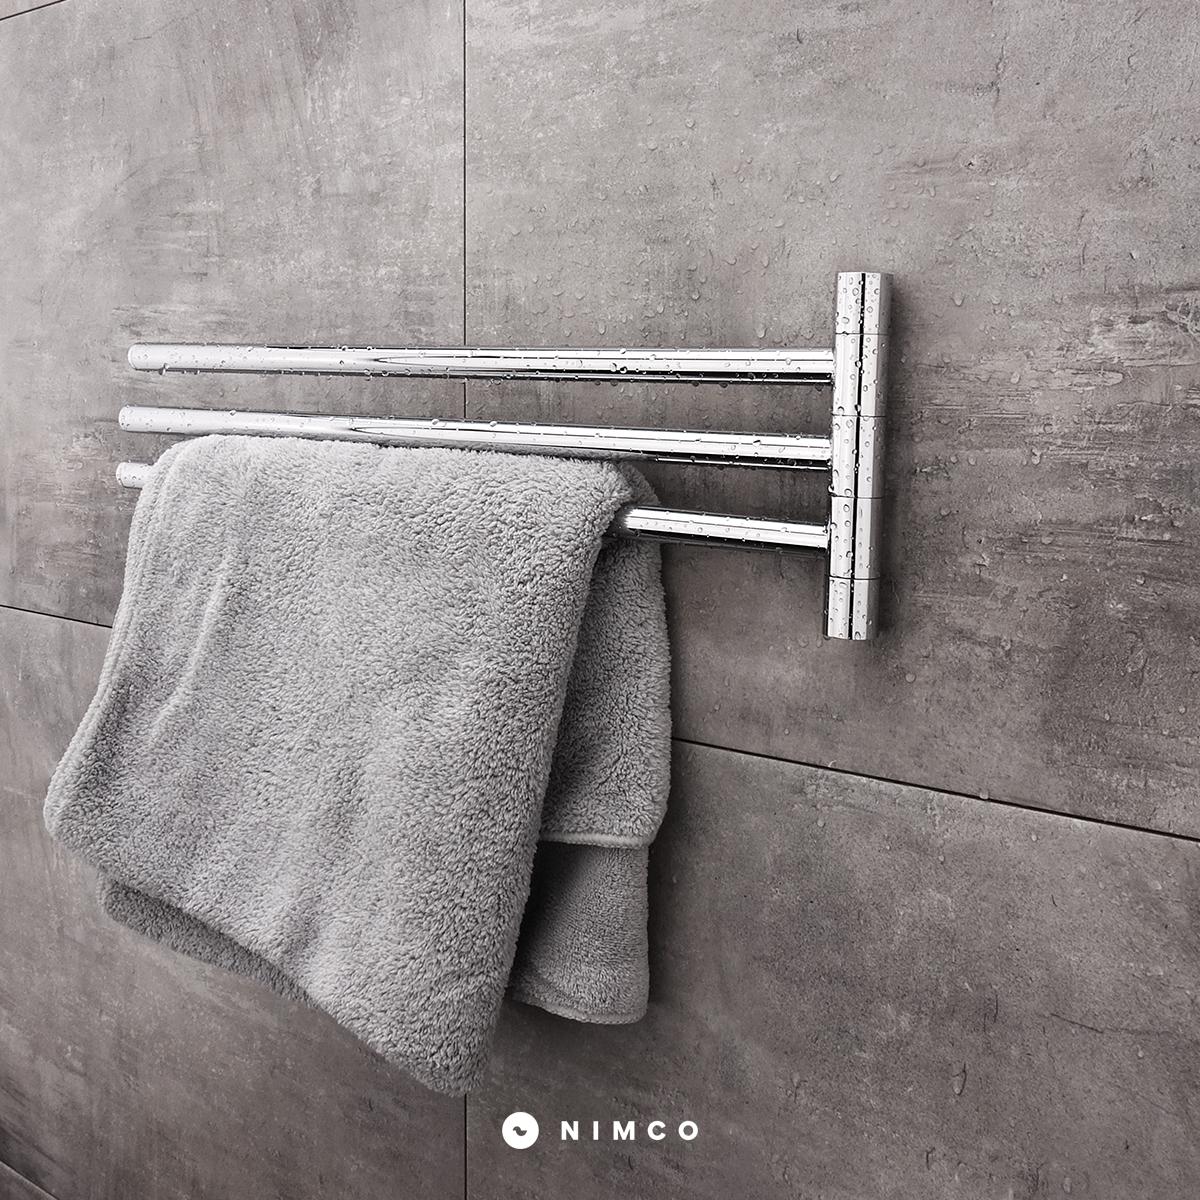 Disfruta de toallas calentitas al salir de la ducha con uno de estos 6  toalleros eléctricos (algunos sin hacer agujeros)